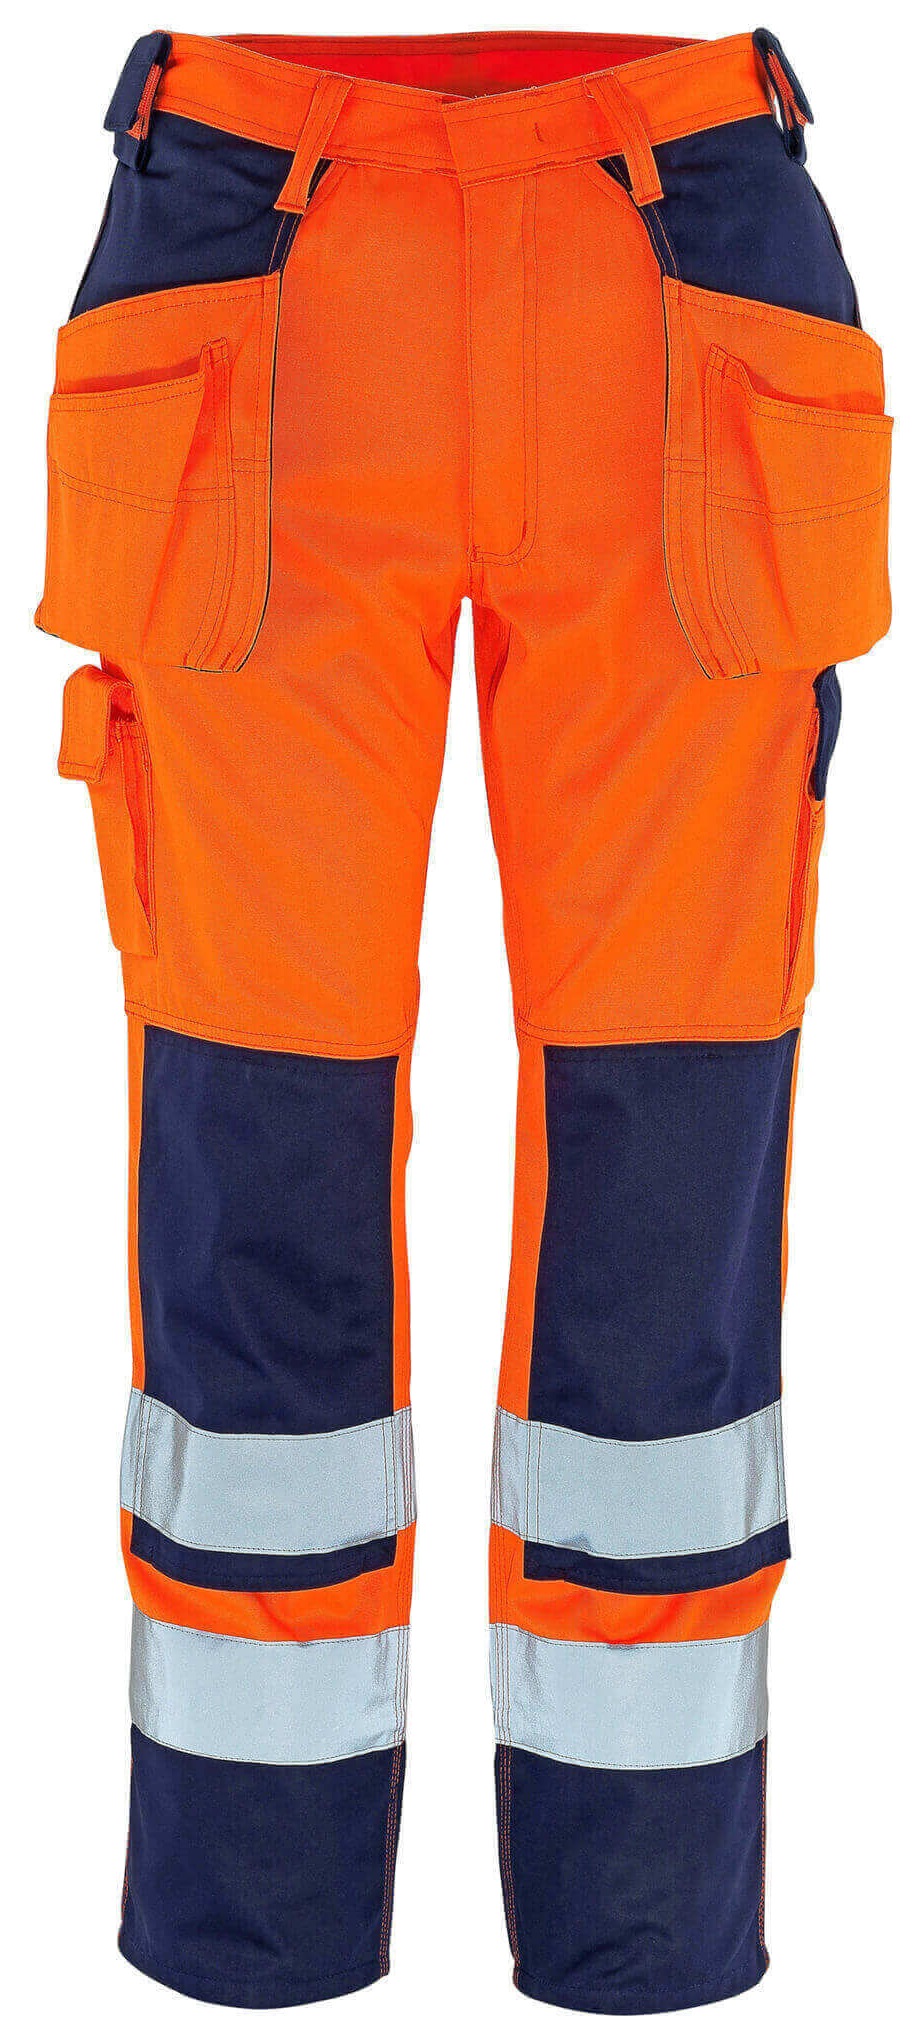 MASCOT-Warnschutz, Warn-Bund-Hose, Almas, 90 cm, 310 g/m², orange/marine
